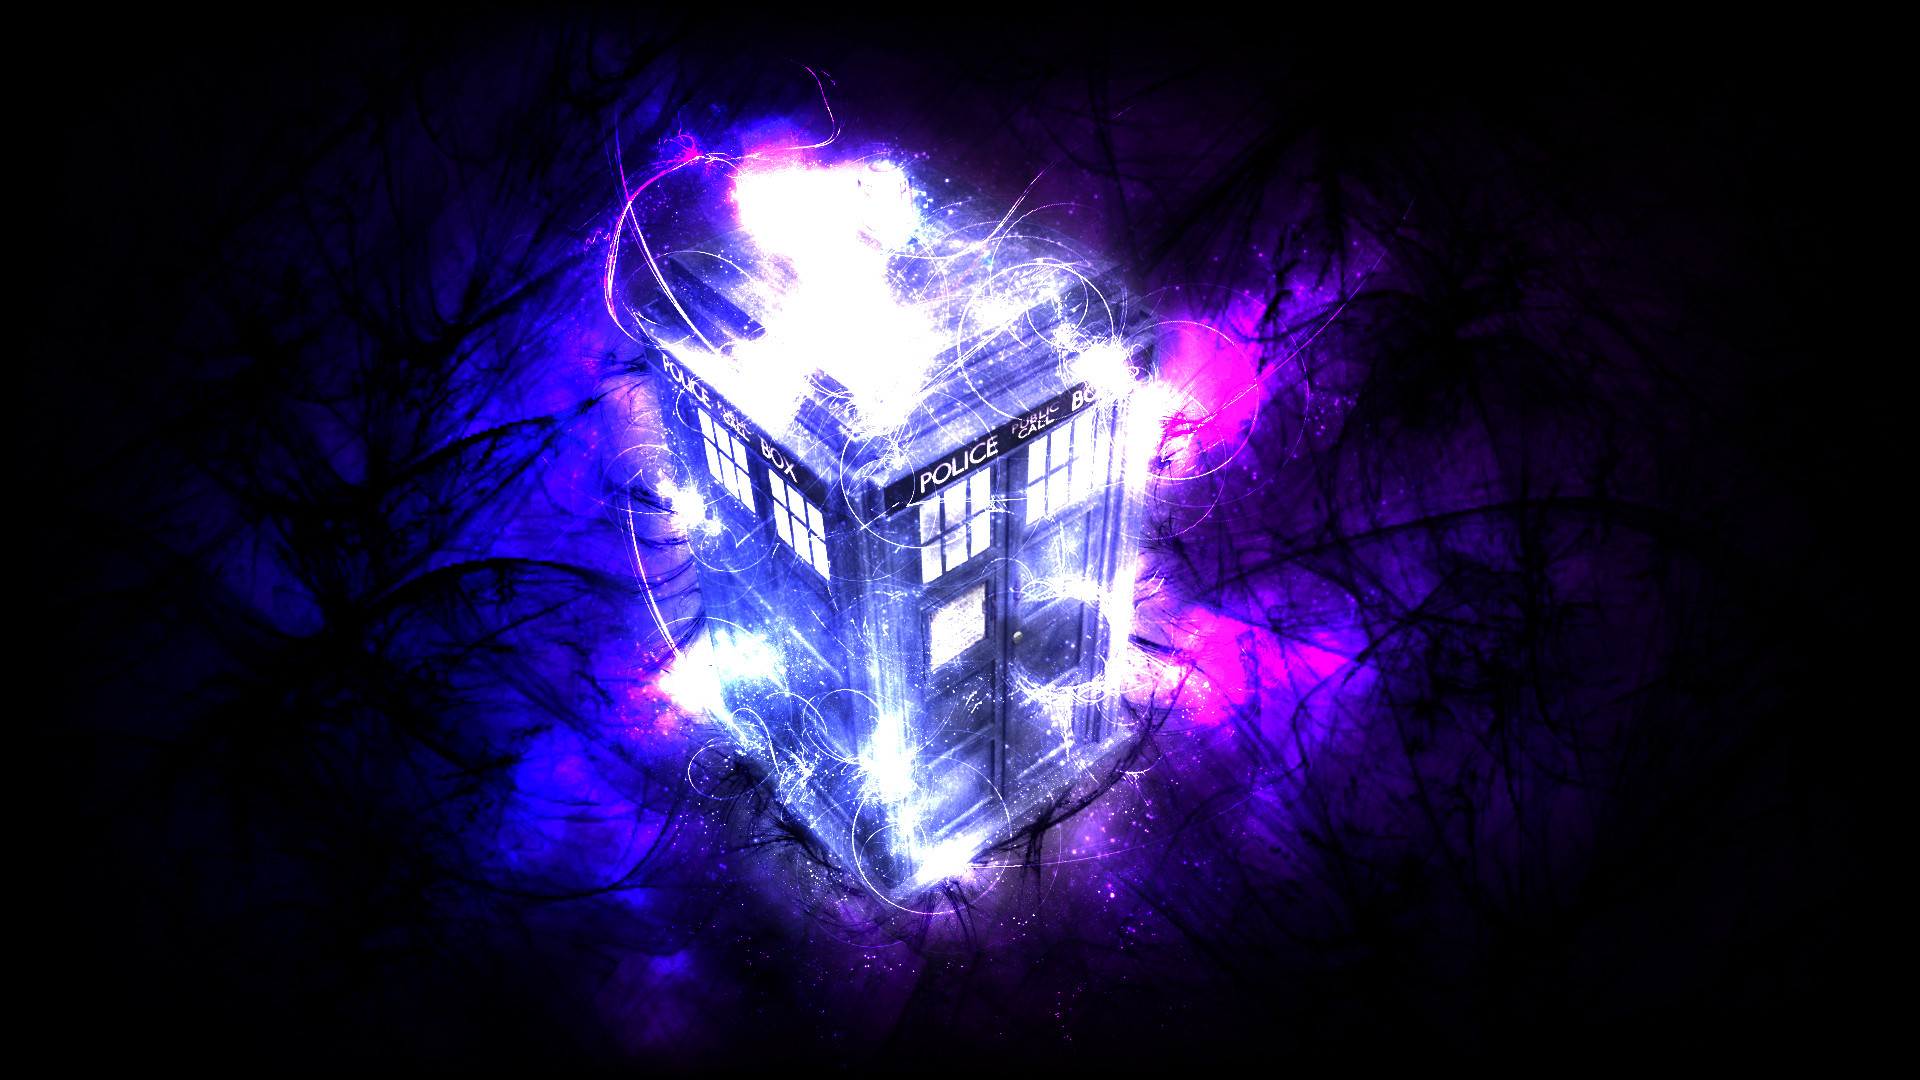 1920x1080 Doctor Who Tardis Matt Smith Desktop Hd Wallpaper CloudPix | HD Wallpapers  | Pinterest | Matt smith, Hd wallpaper and Wallpaper